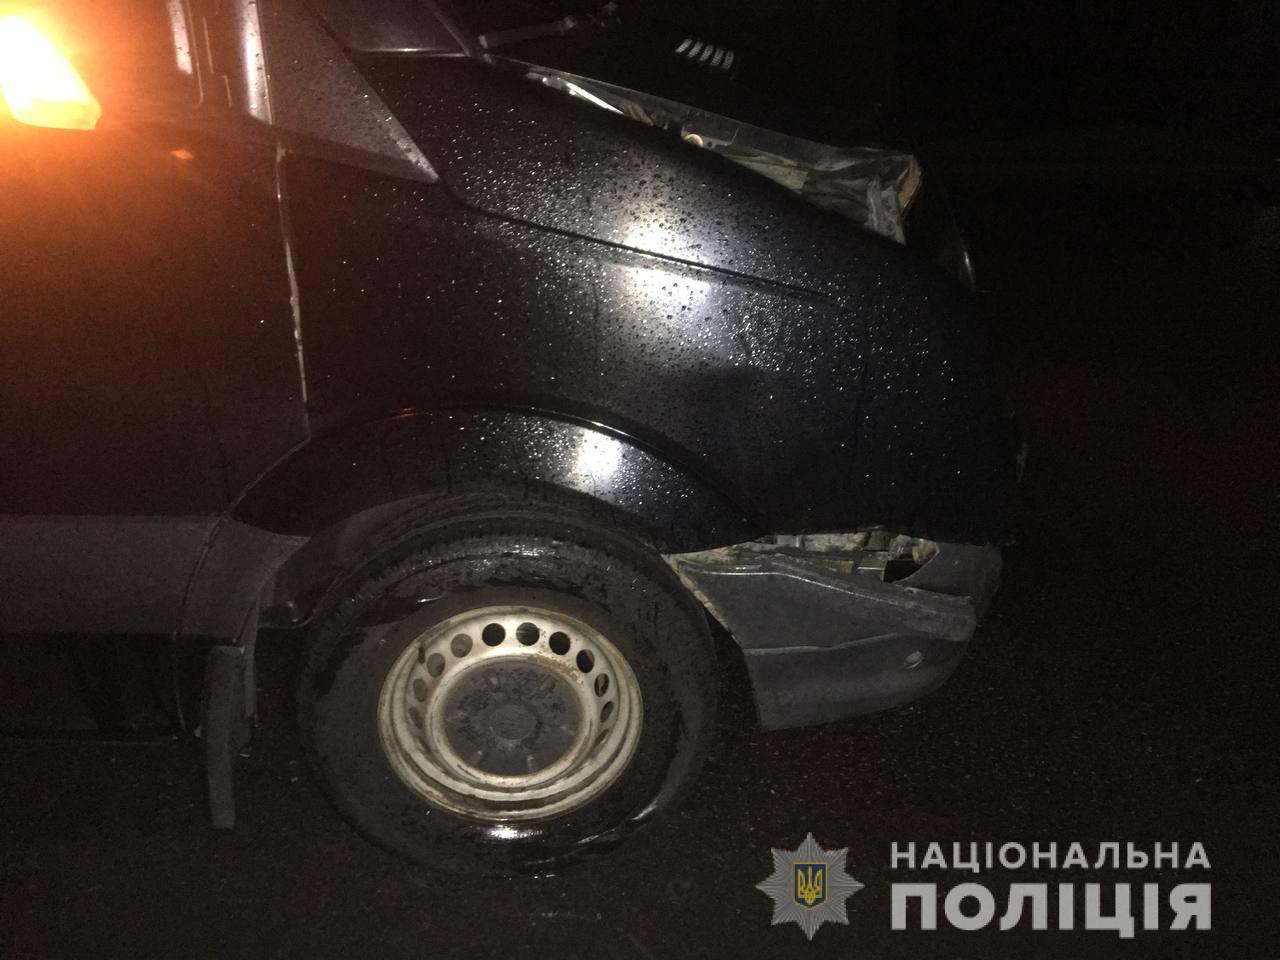 пассажирский микроавтобус Луганск-Киев насмерть сбил женщину